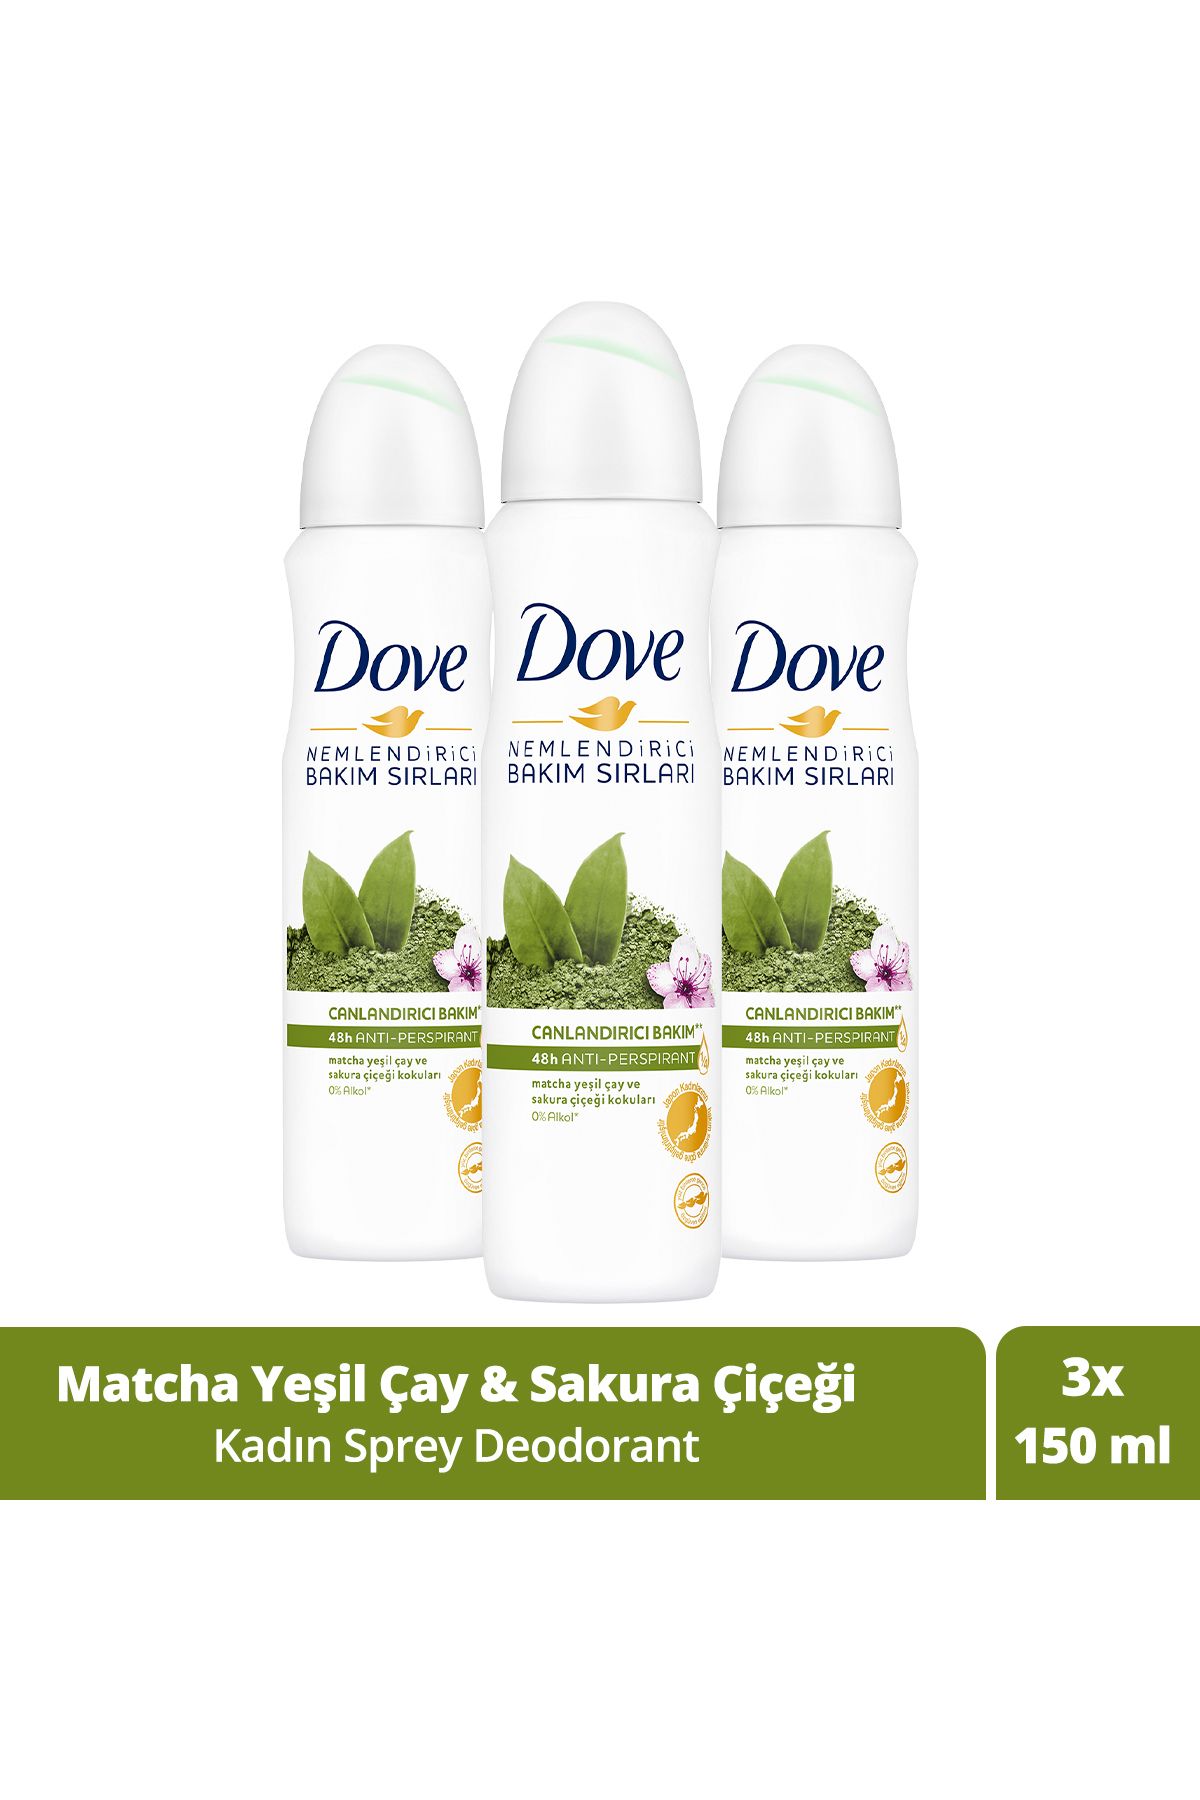 Dove Kadın Sprey Deodorant Canlandırıcı Bakım Matcha Yeşil Çay Ve Sakura Çiçeği 150 ml X3 Adet